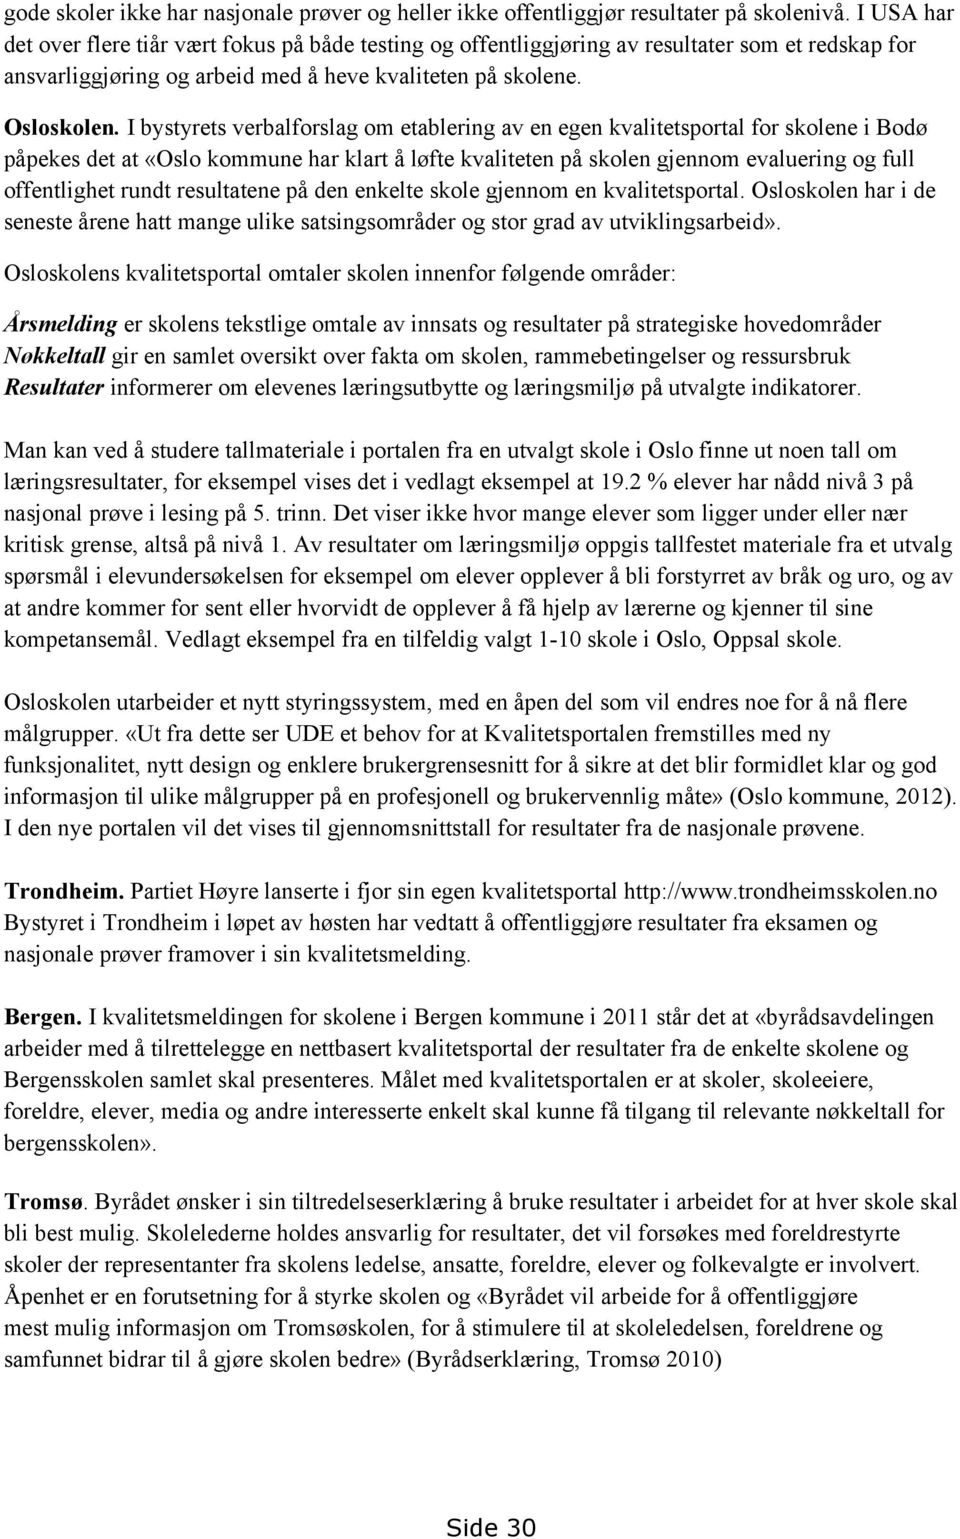 I bystyrets verbalforslag om etablering av en egen kvalitetsportal for skolene i Bodø påpekes det at «Oslo kommune har klart å løfte kvaliteten på skolen gjennom evaluering og full offentlighet rundt